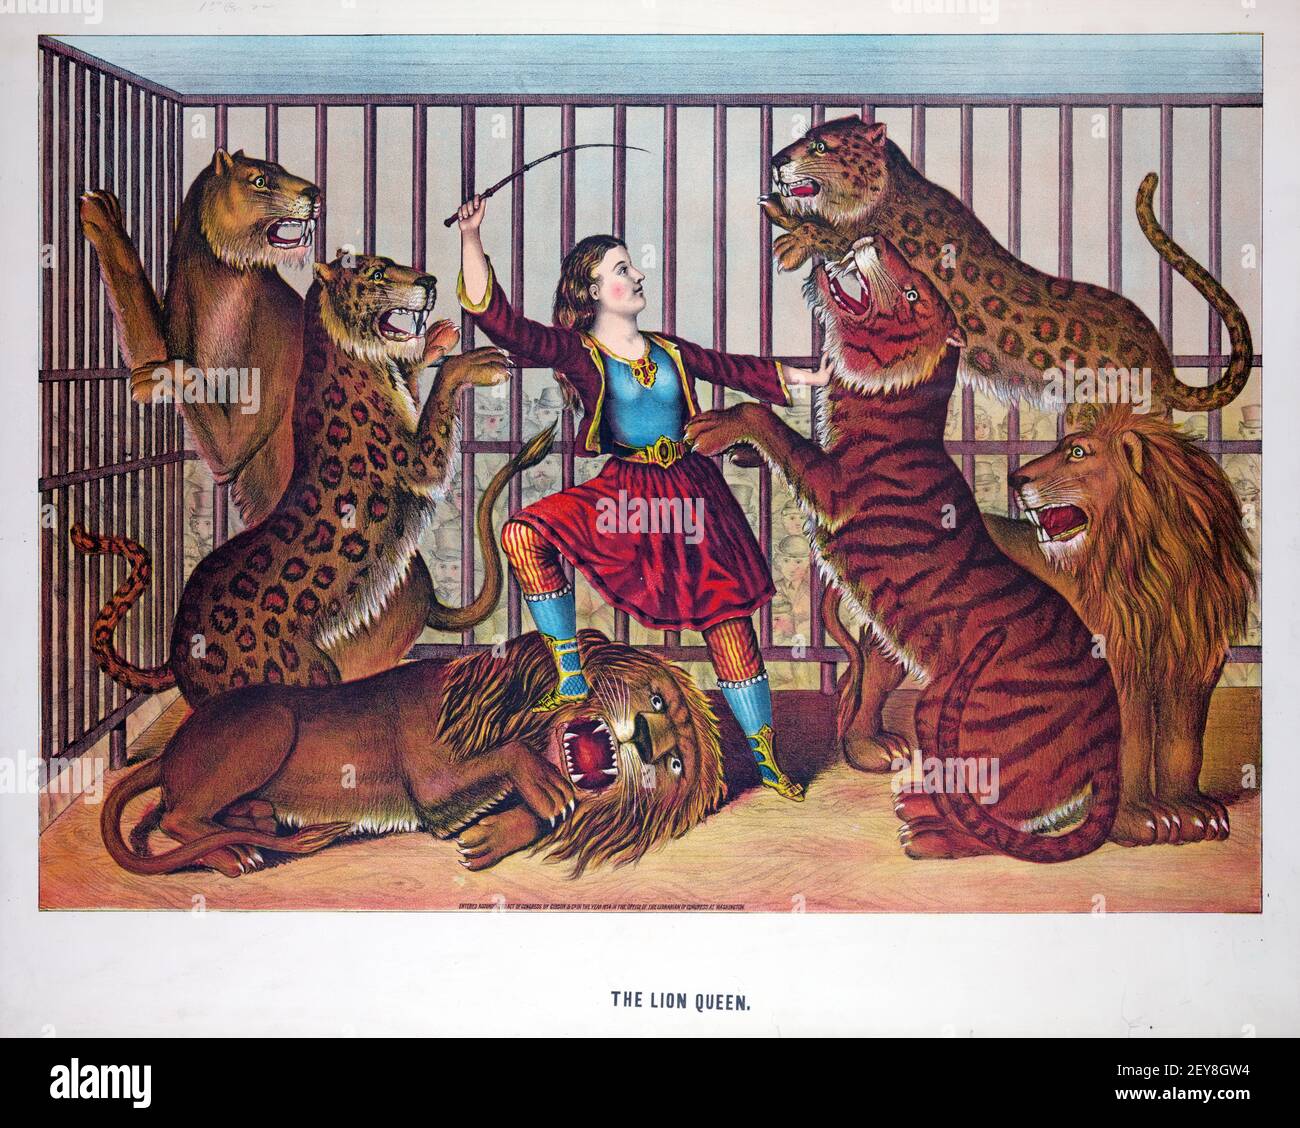 Animale Tamer: La Regina Leone. Illustrazione, donna in gabbia piena di tigri, leopardi e leoni. Poster classico / illustrazione, vecchio e vintage stile. Foto Stock